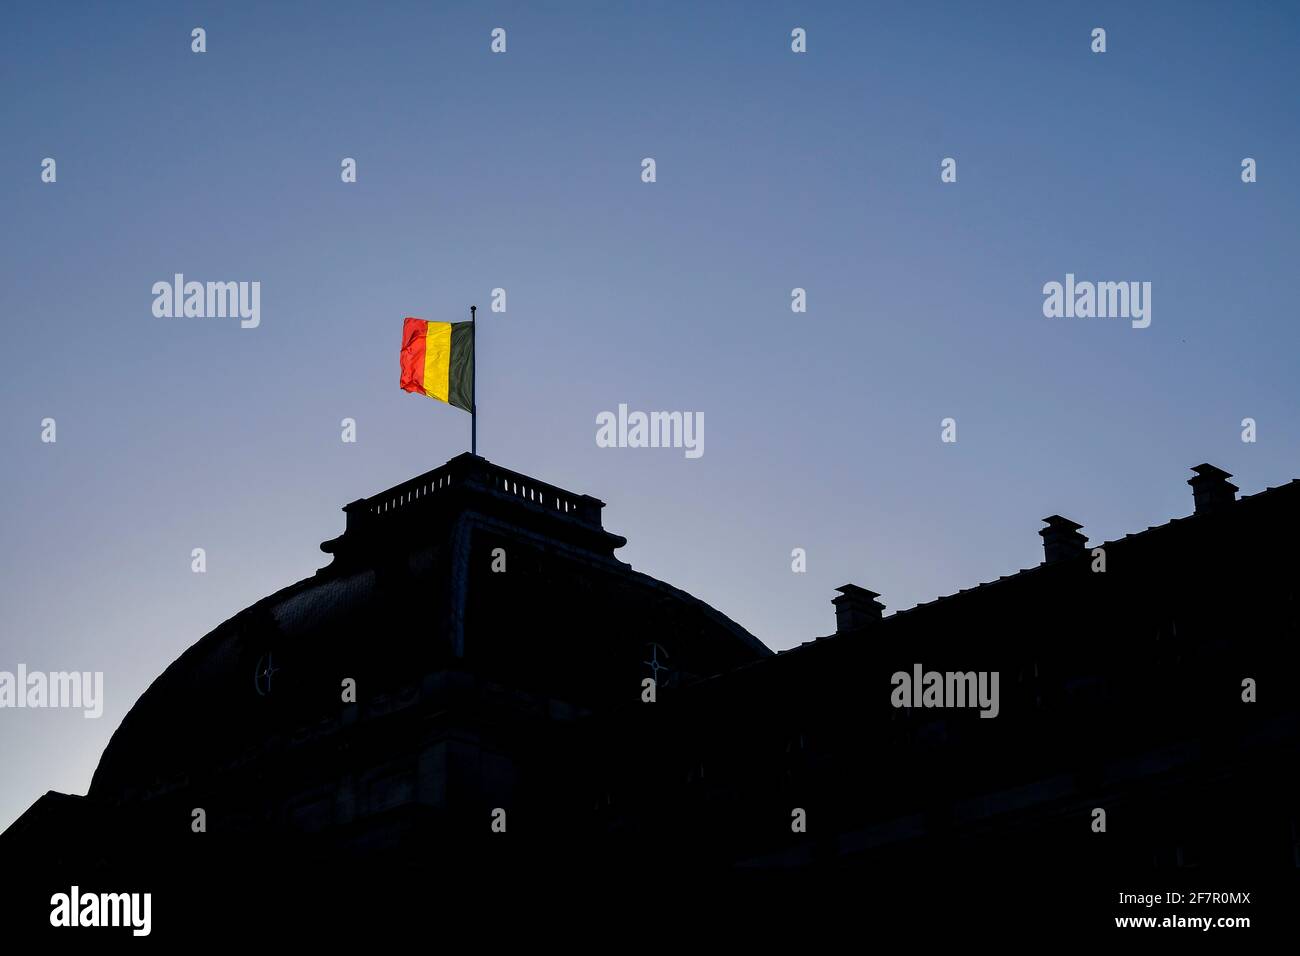 15.12.2019, Bruessel, Belgien - Die belgische Fahne auf dem Dach des koeniglichen Palastes in Bruessel zeigt an, dass die koenigliche Familie anwesend Stock Photo